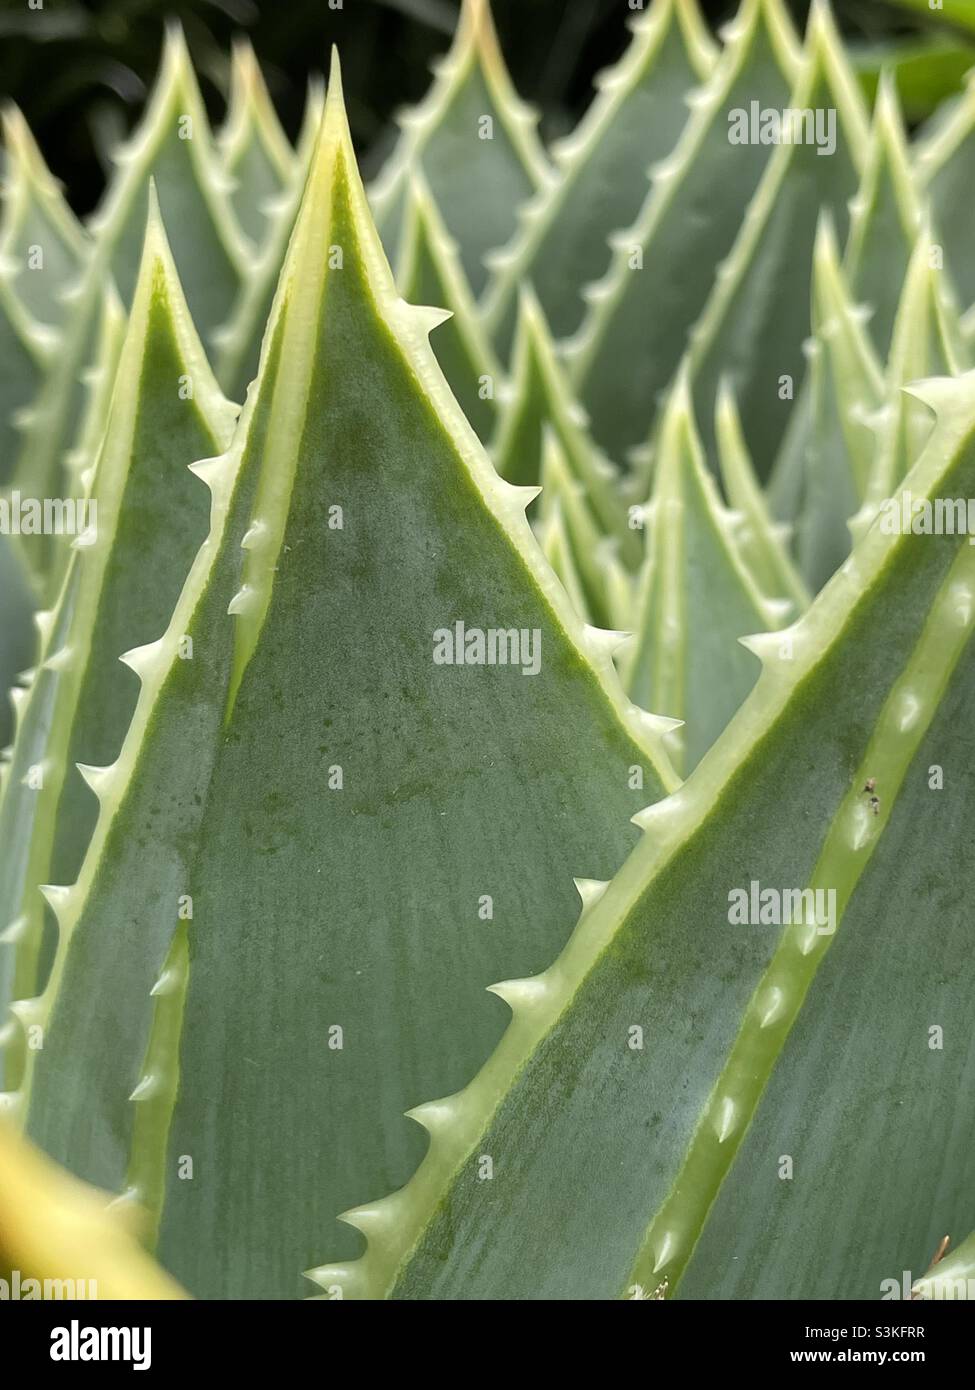 Spiky Aloe Vera leaves Stock Photo